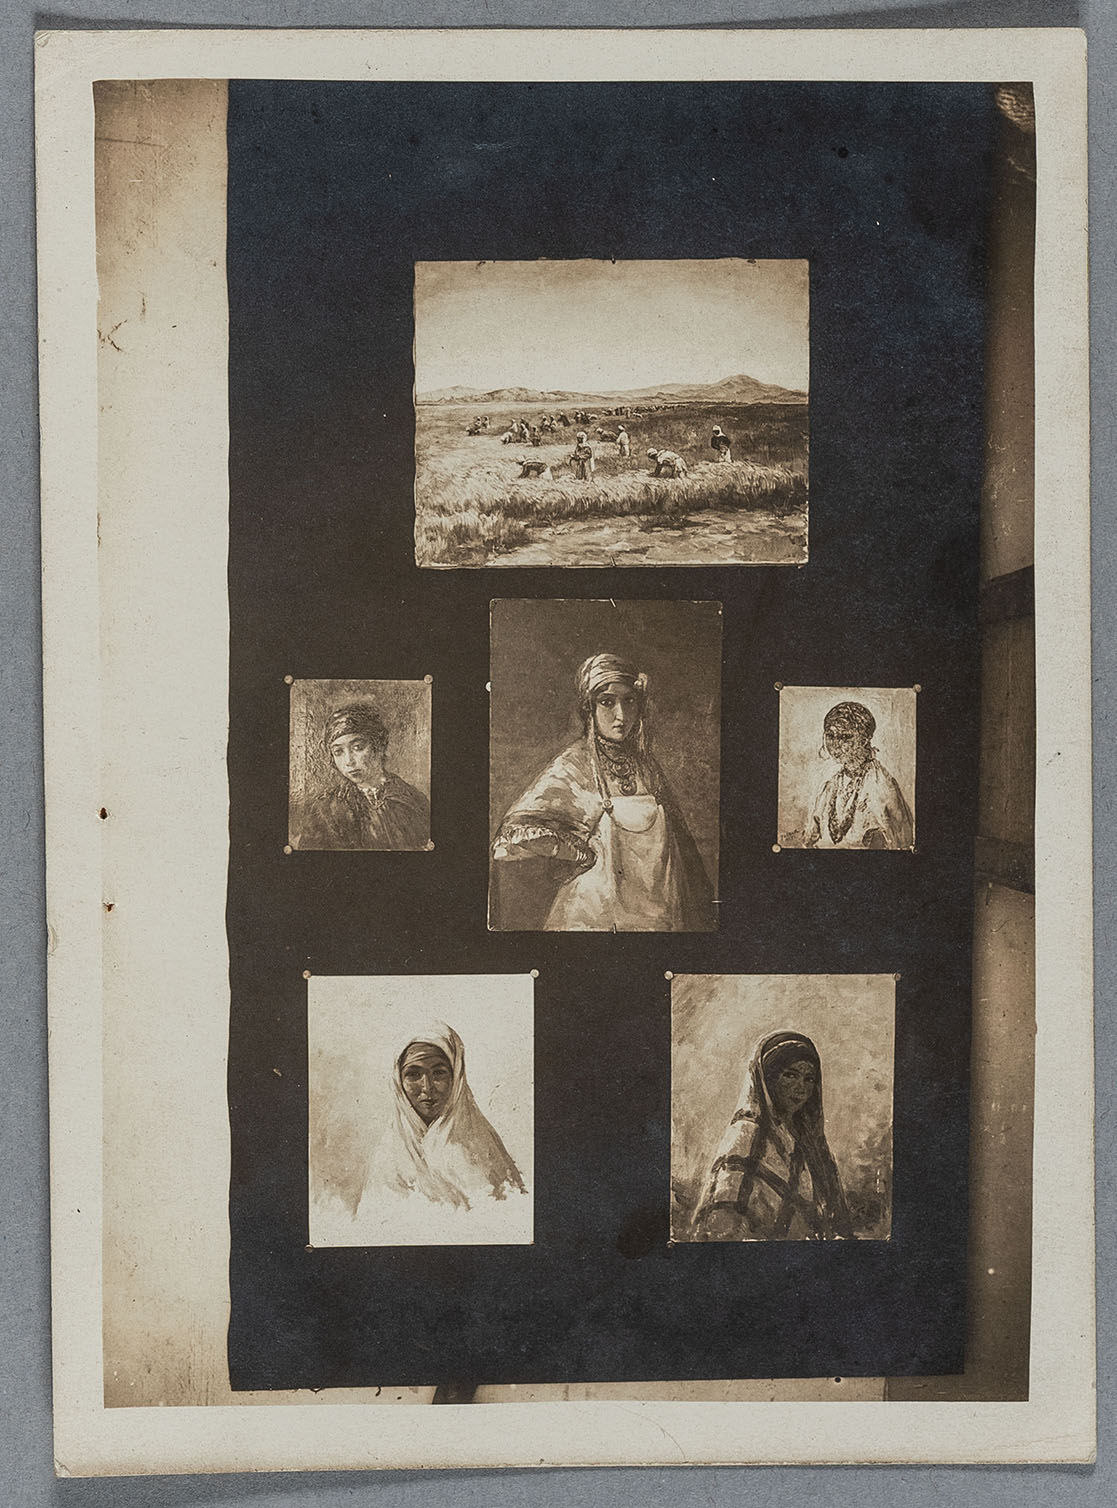 Photographie de tableaux réalisés par Yo Laur pendant sa mission en Algérie.